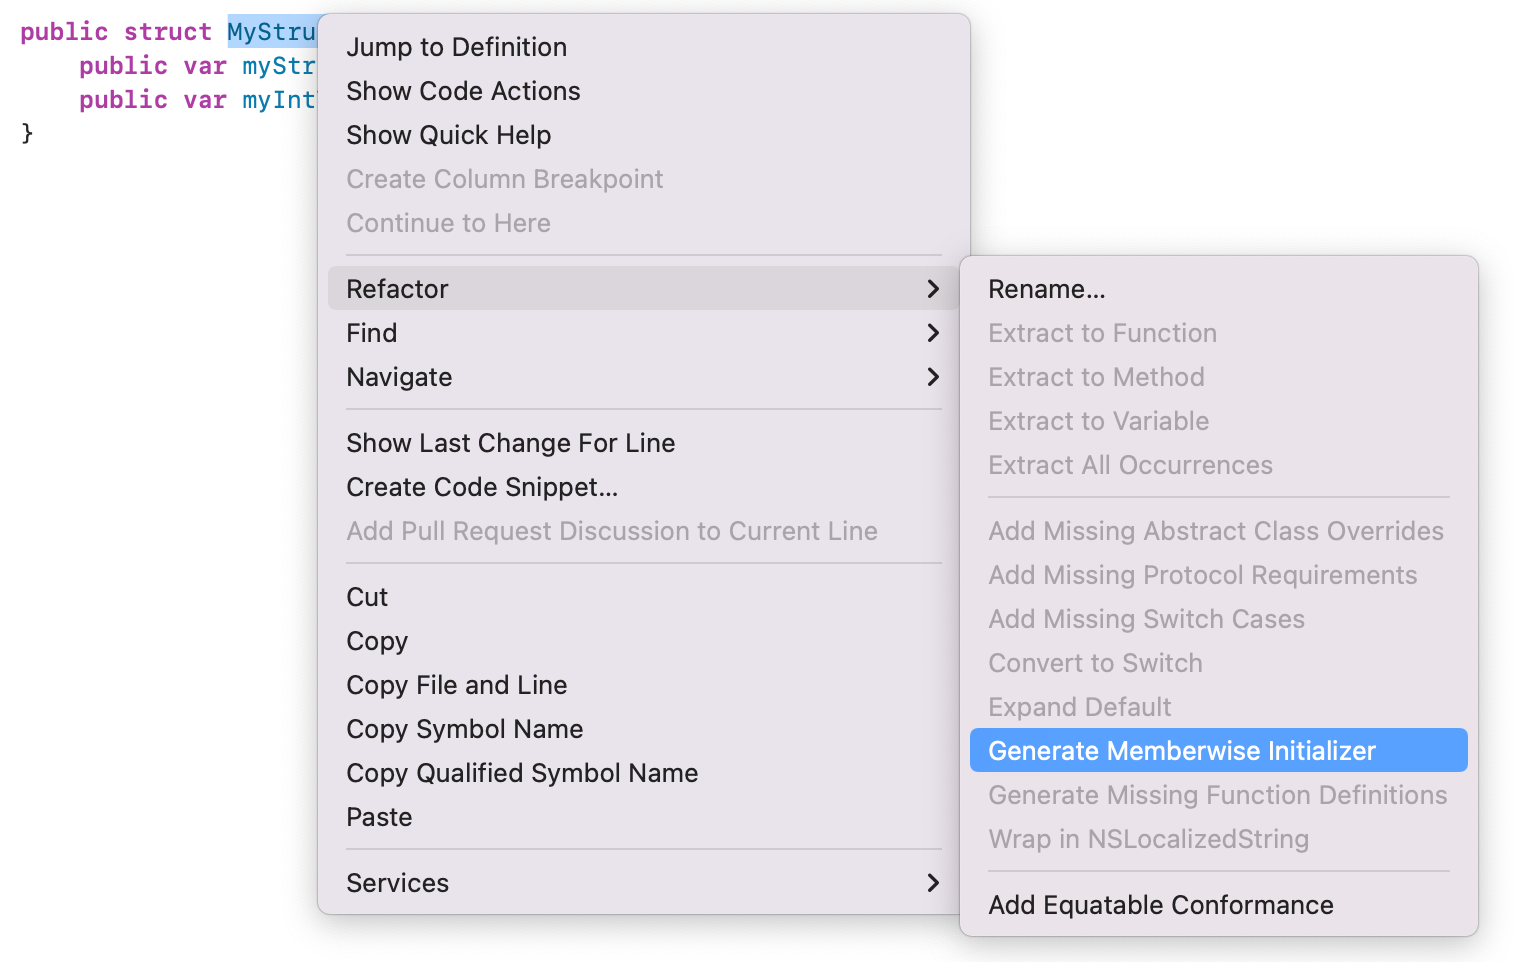 Generate Memberwise Initializer menu